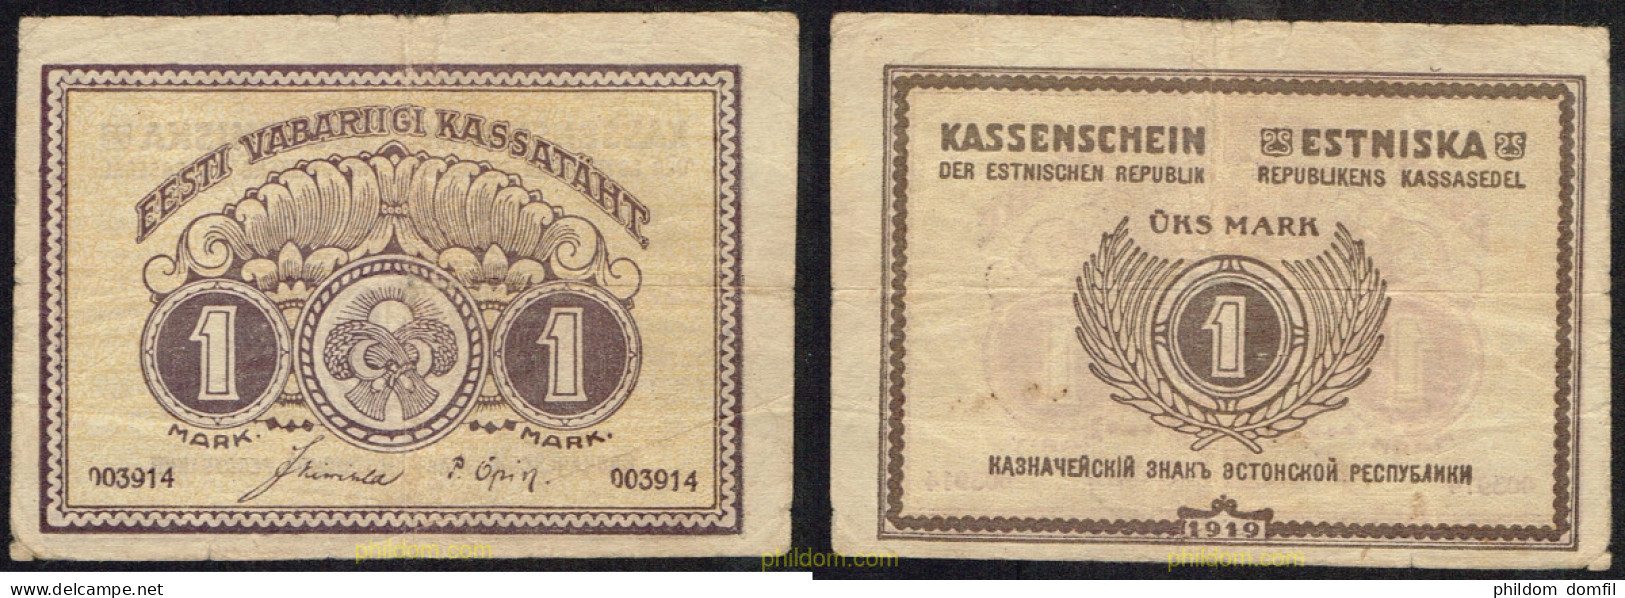 4783 ESTONIA 1919 ESTONIA 1 MARK 1919 - Estonia